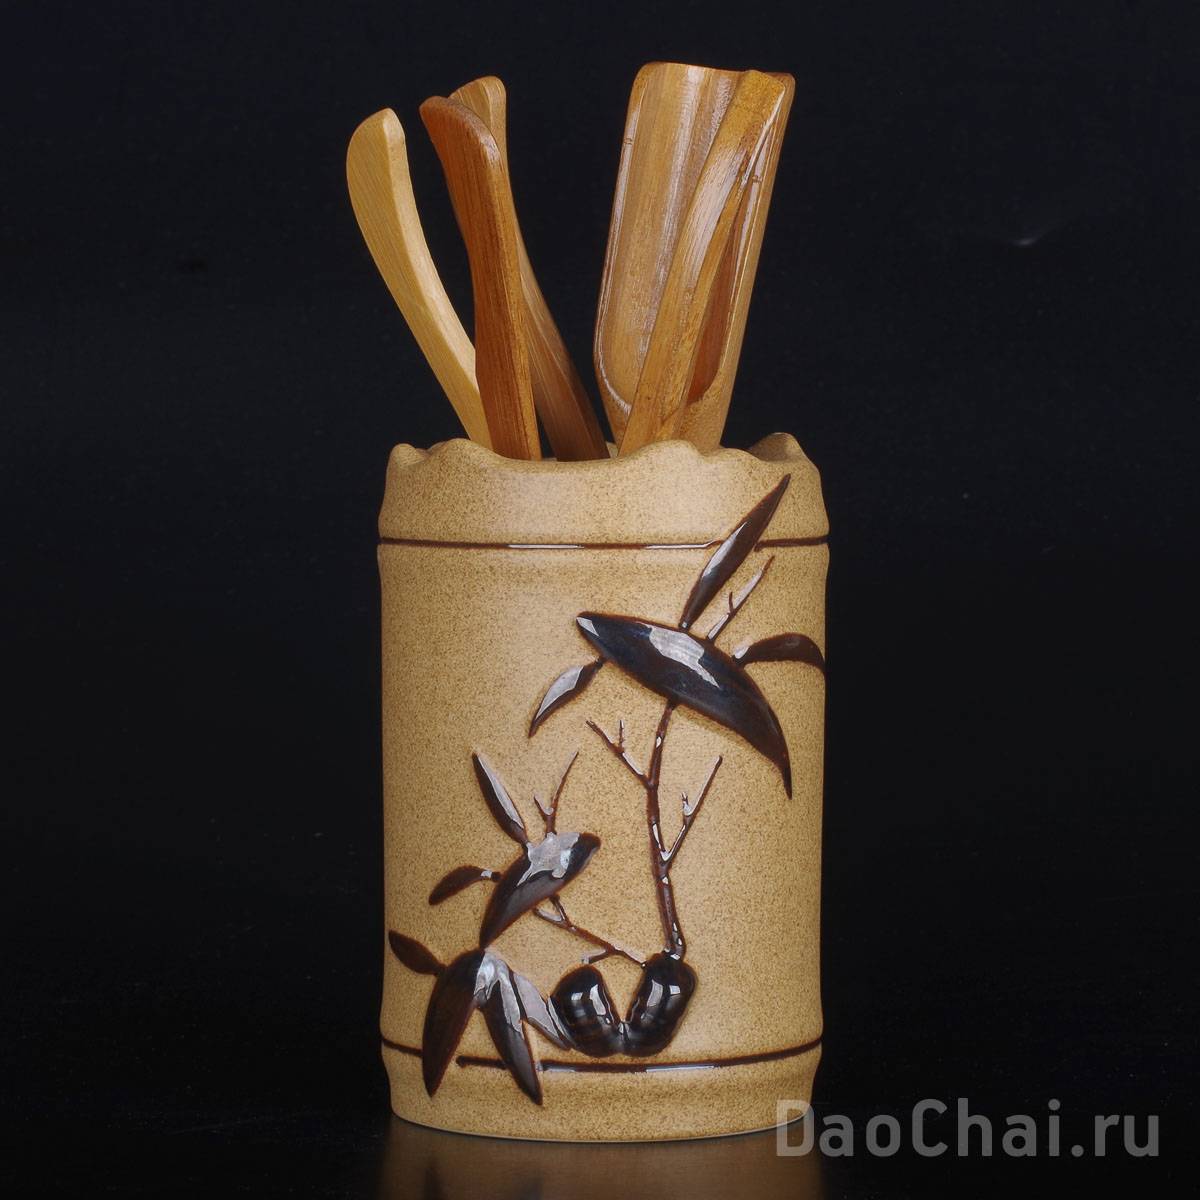 Инструменты, керамика, бамбук, 5 предметов (81112)-